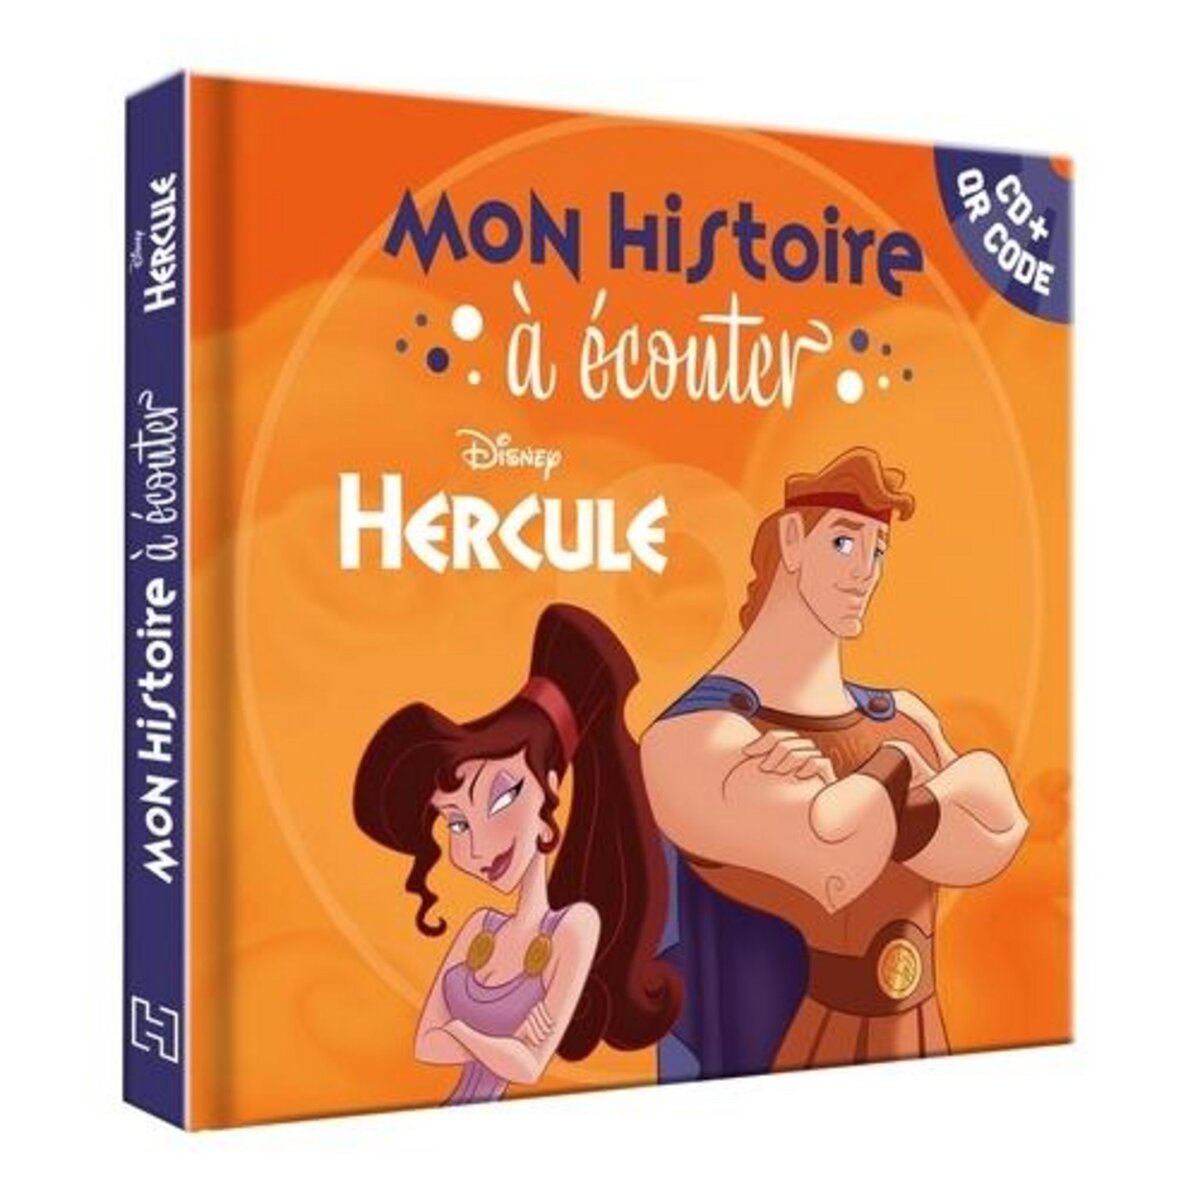  HERCULE. AVEC 1 CD AUDIO, Disney